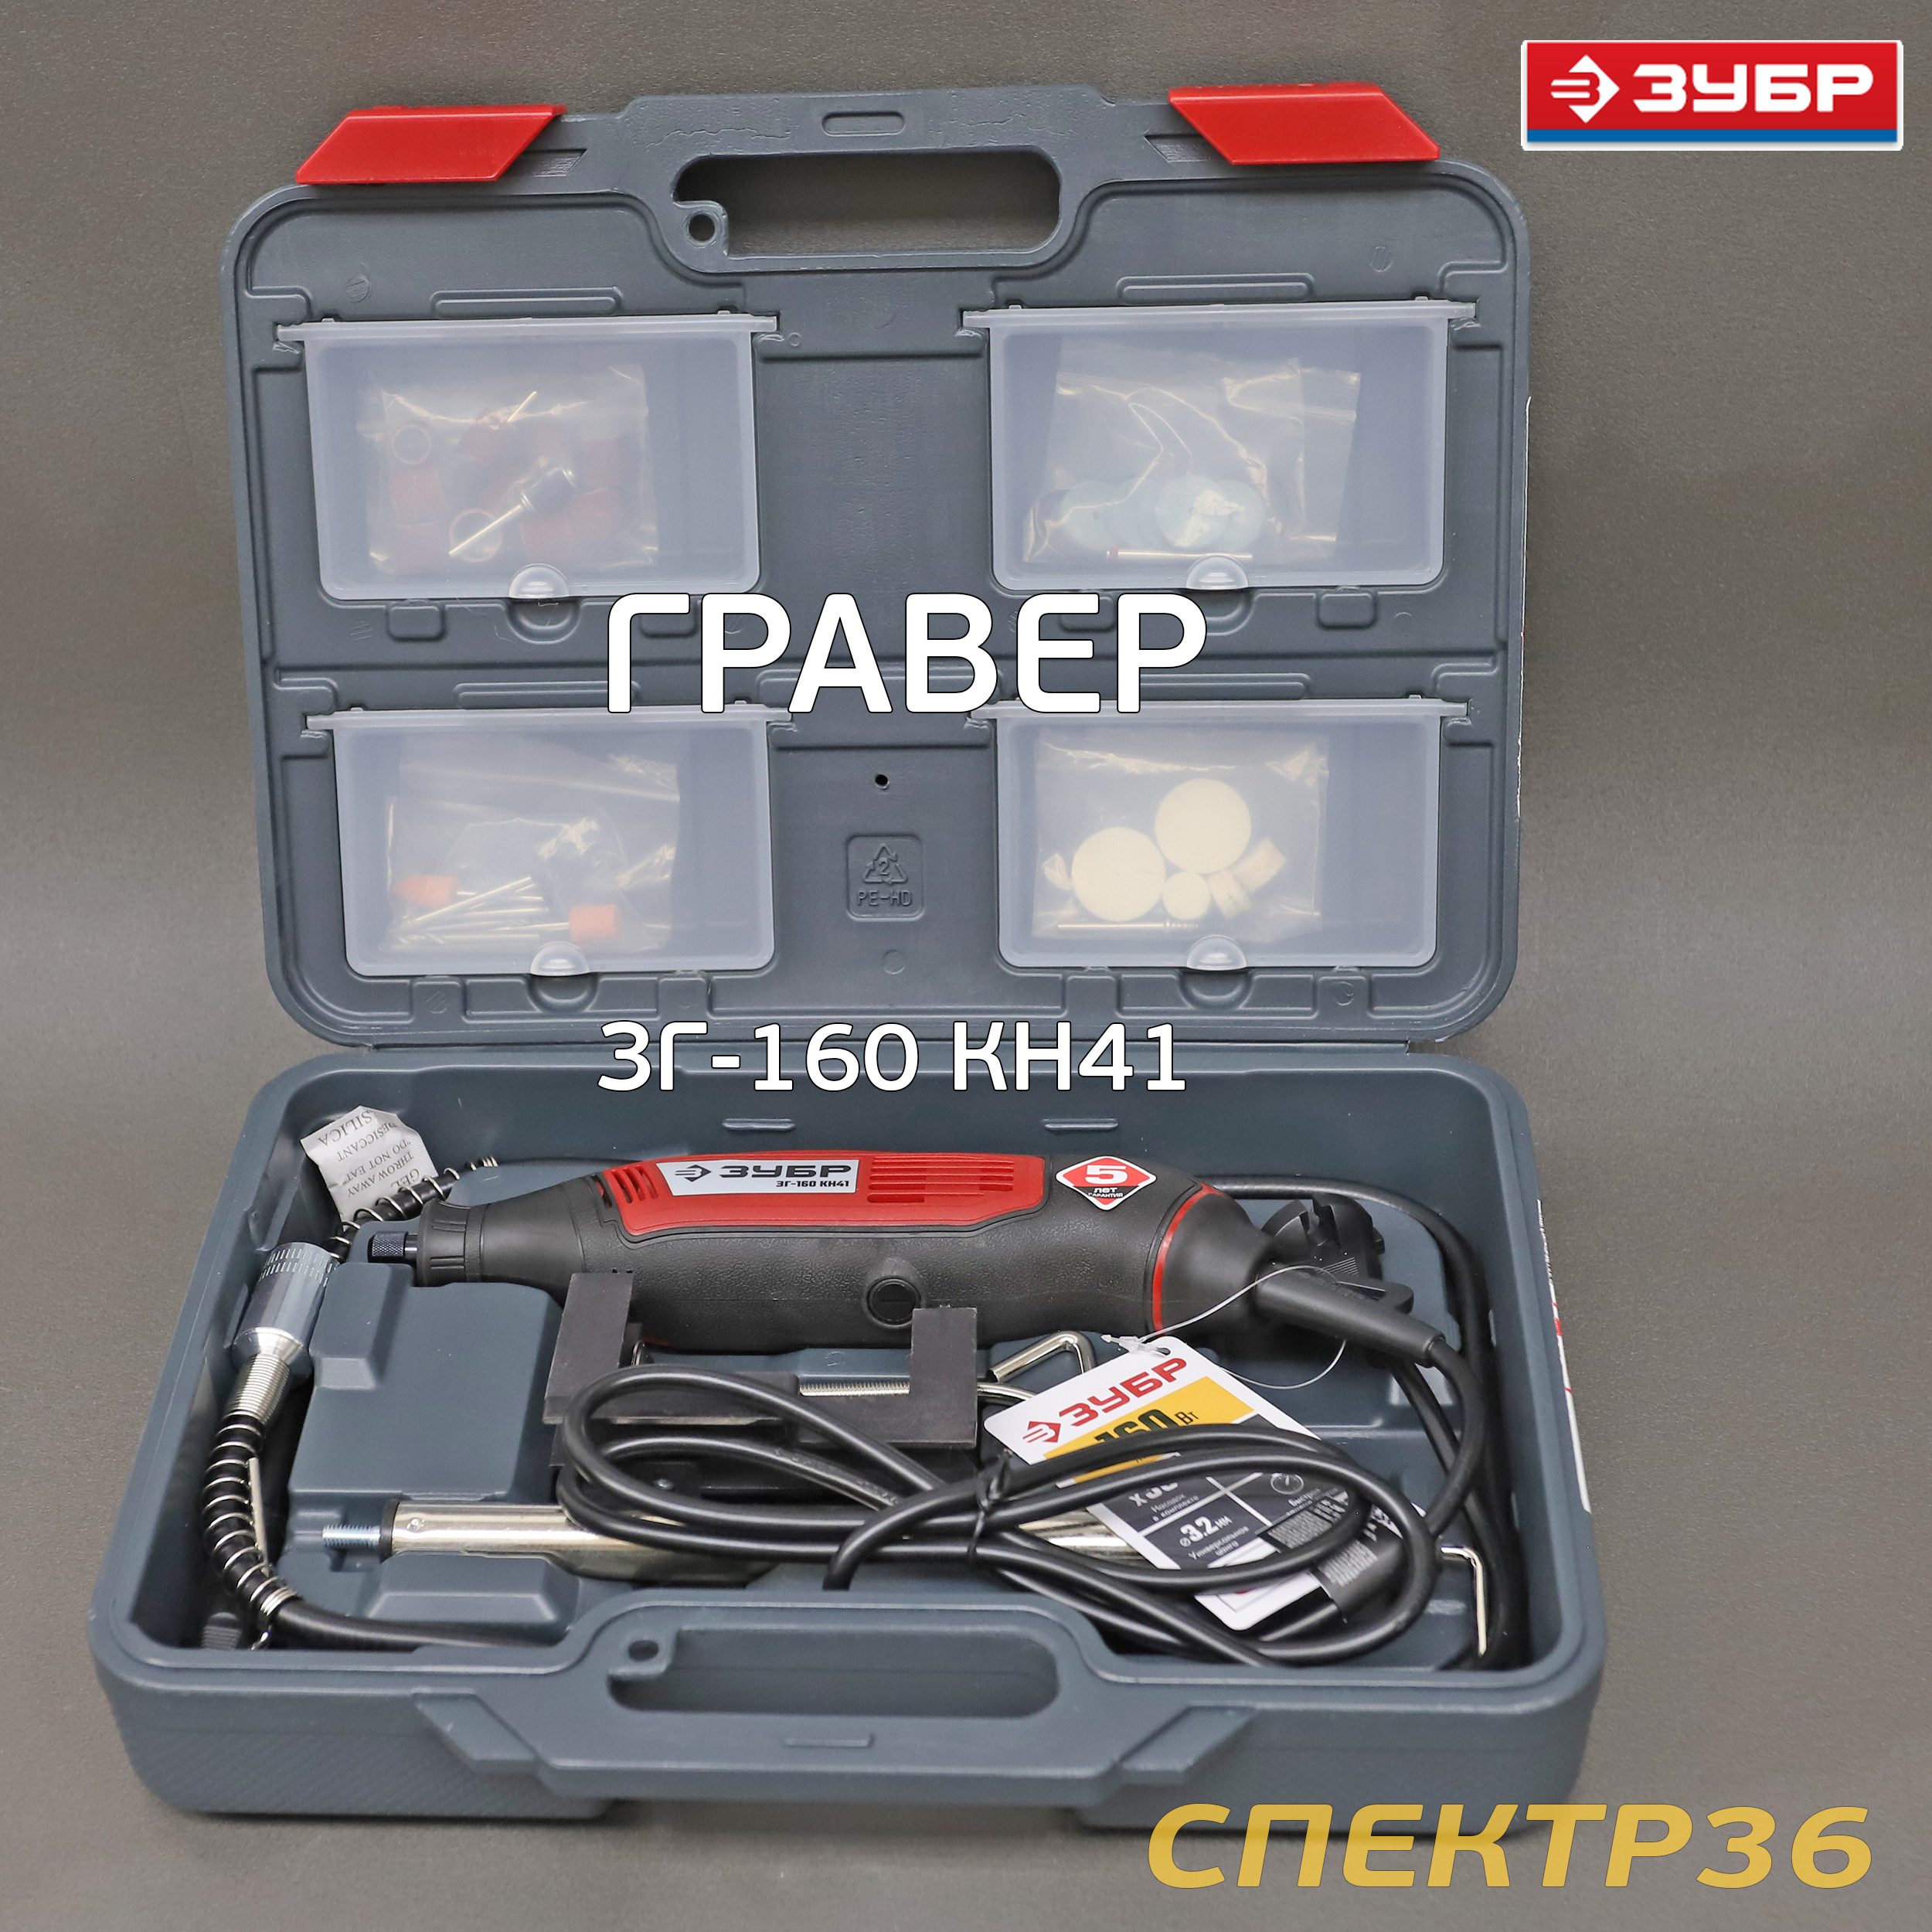  электрический ЗУБР ЗГ-160 КН41 (160Вт, гибкий вал, кейс, насадки)